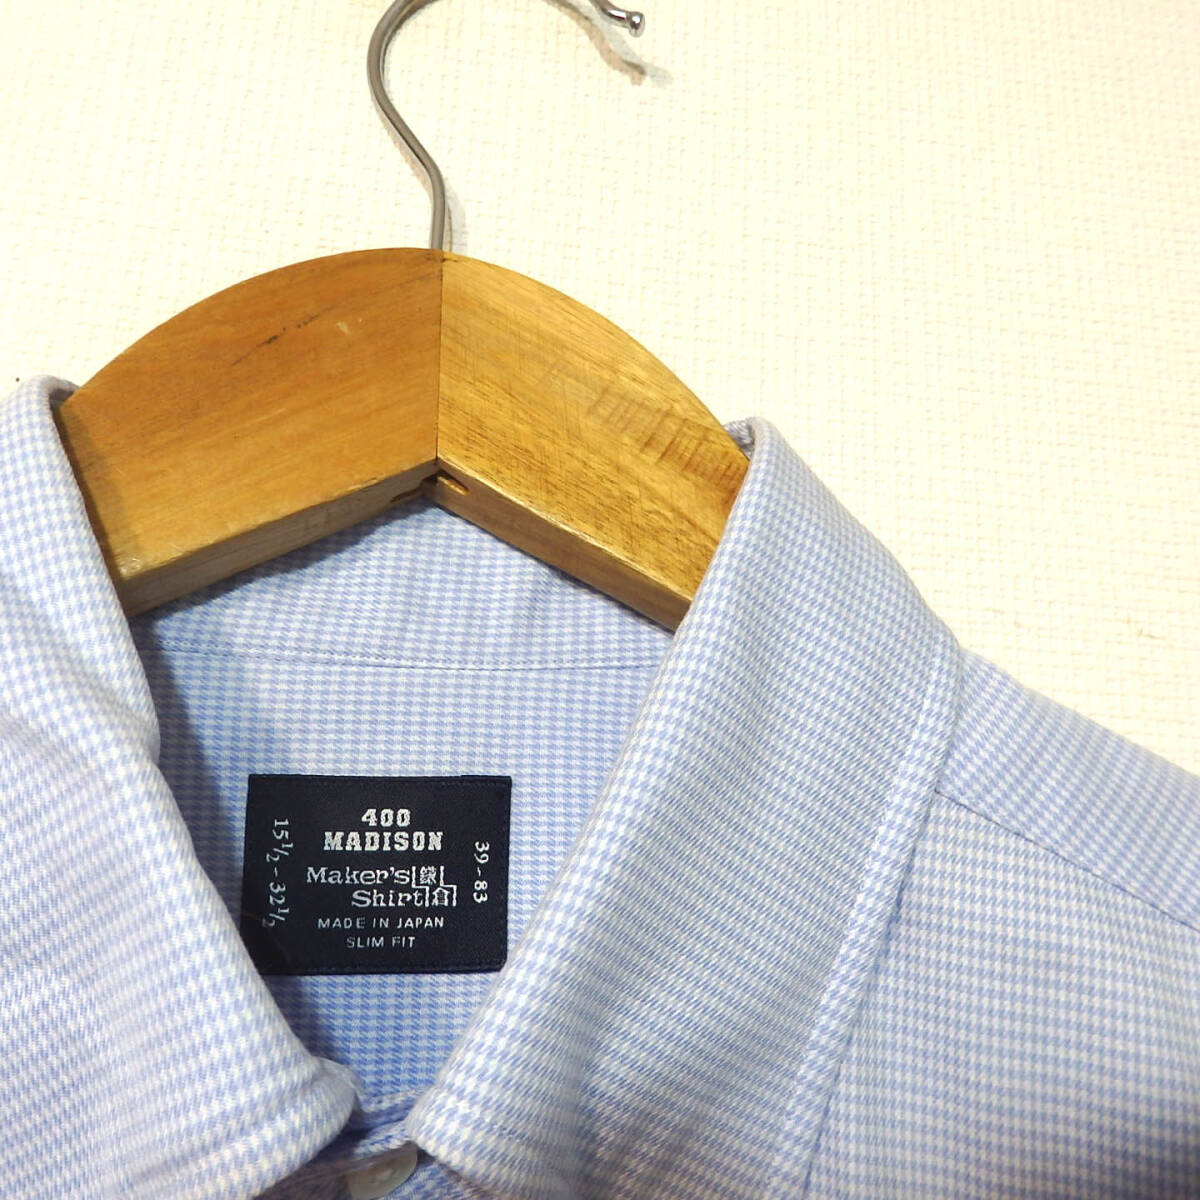 【送料無料】メーカーズシャツ鎌倉ドレスシャツ/水色 チェック柄 400madison 39-83 MAKER'S SHIRT KAMAKURAの画像4